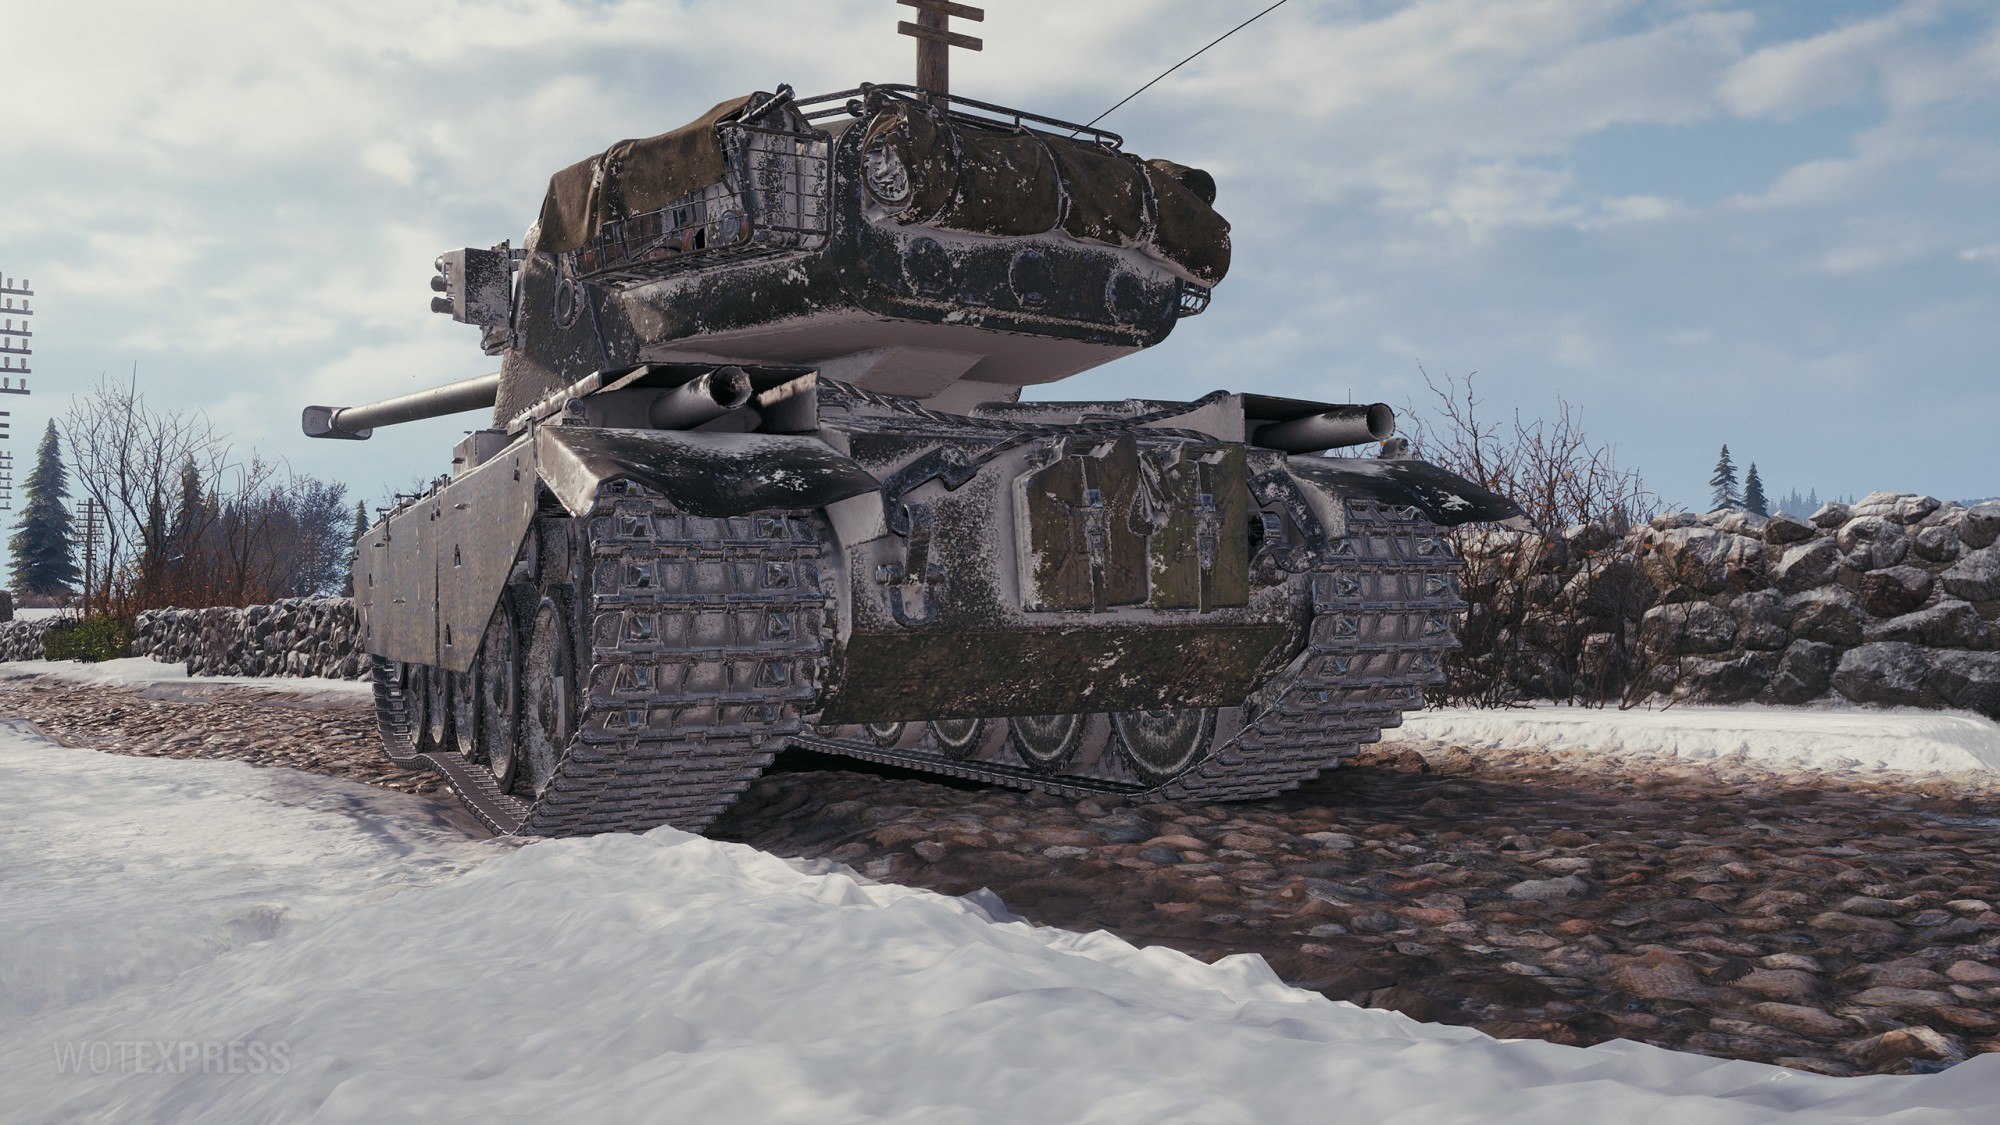 1951 танк